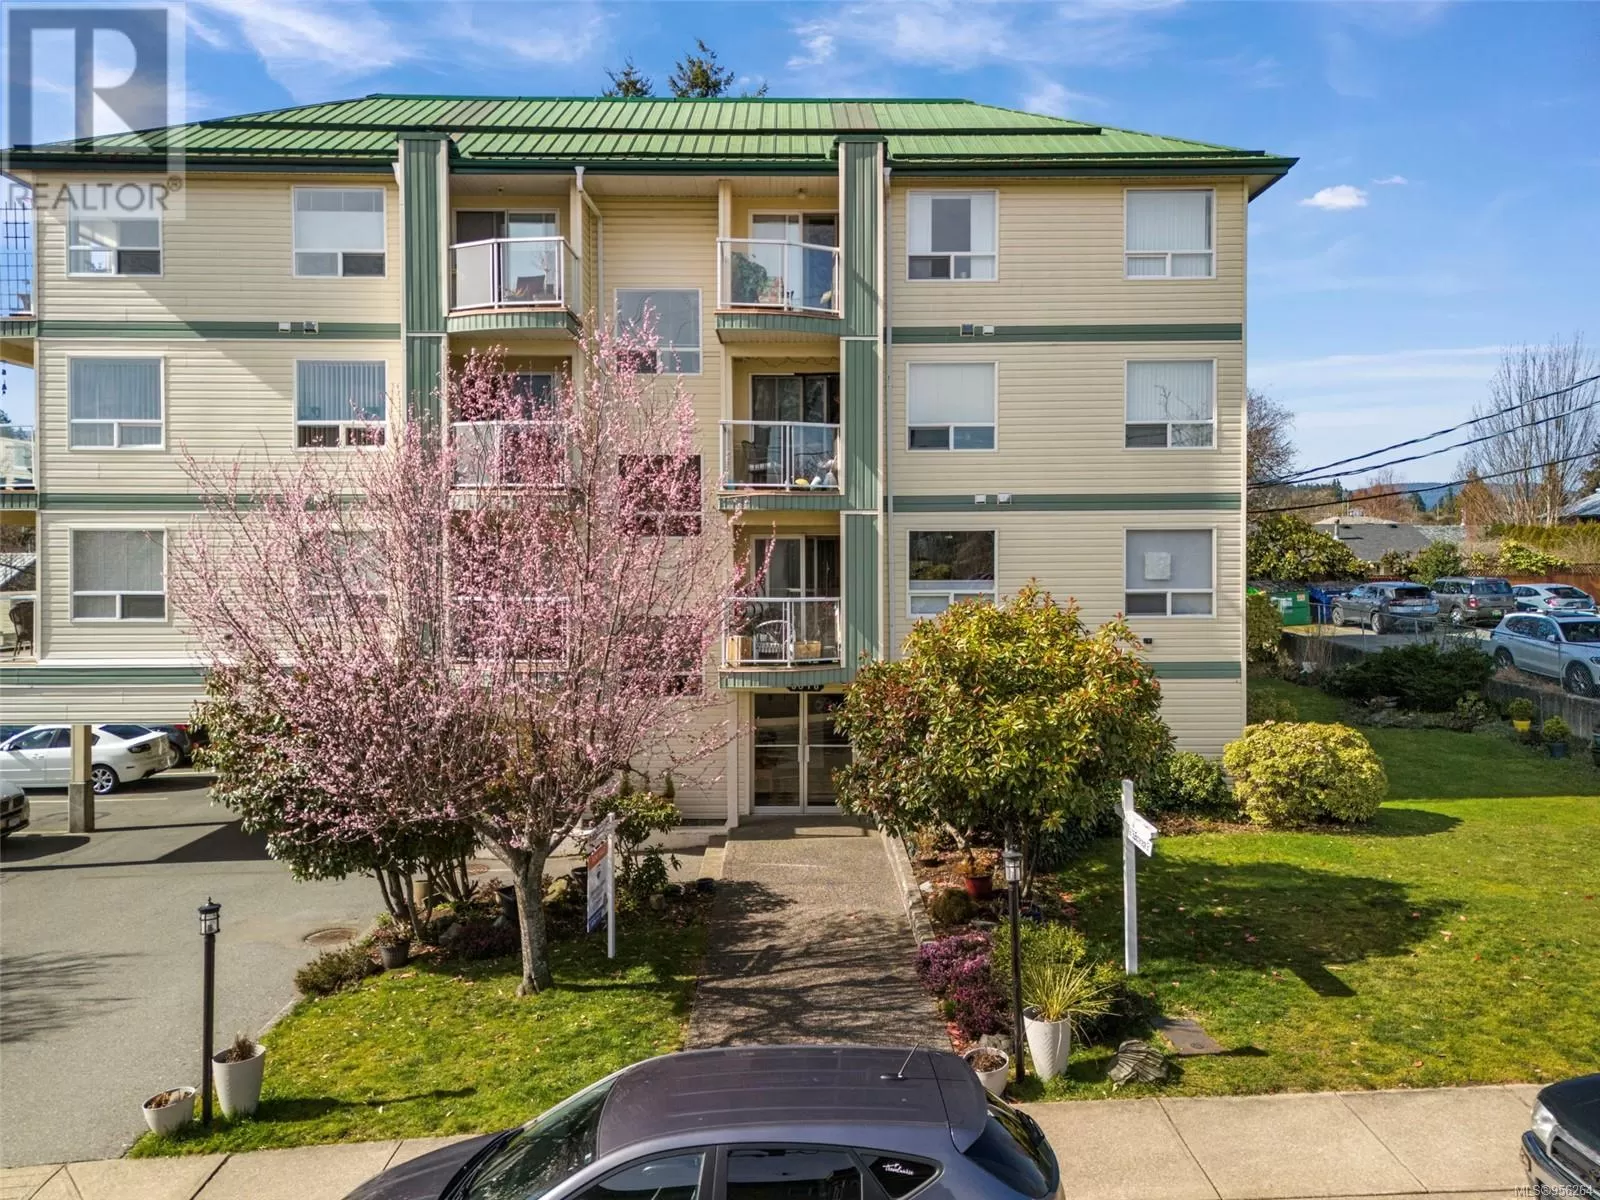 Apartment for rent: 203 9876 Esplanade St, Chemainus, British Columbia V0R 1K1